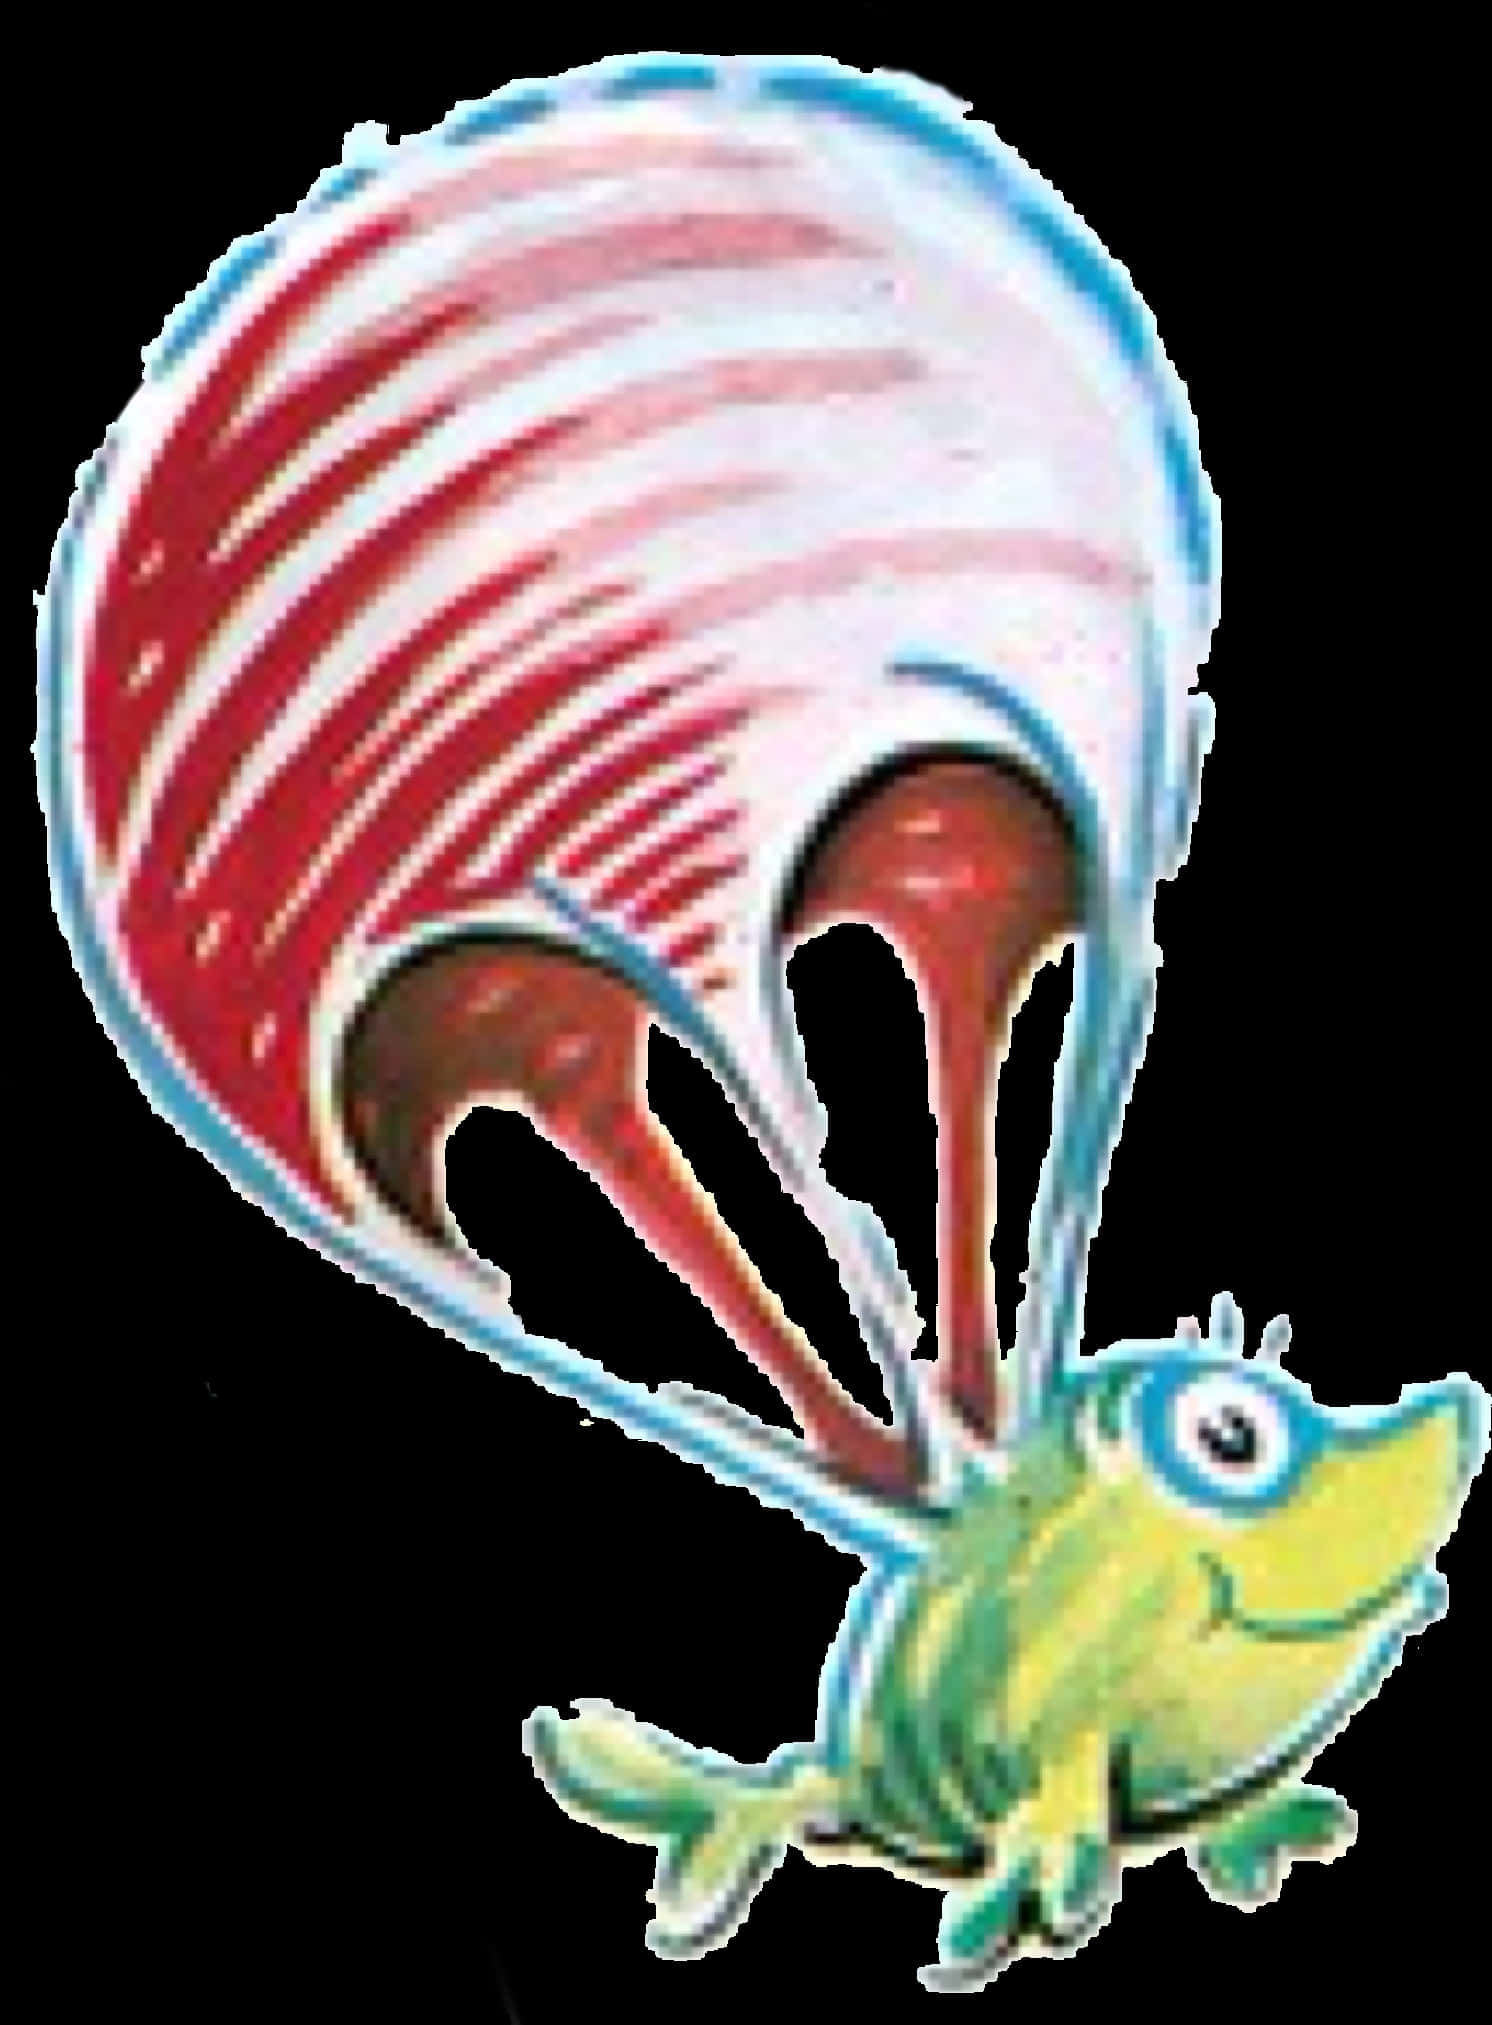 A Cartoon Of A Bug With A Parachute